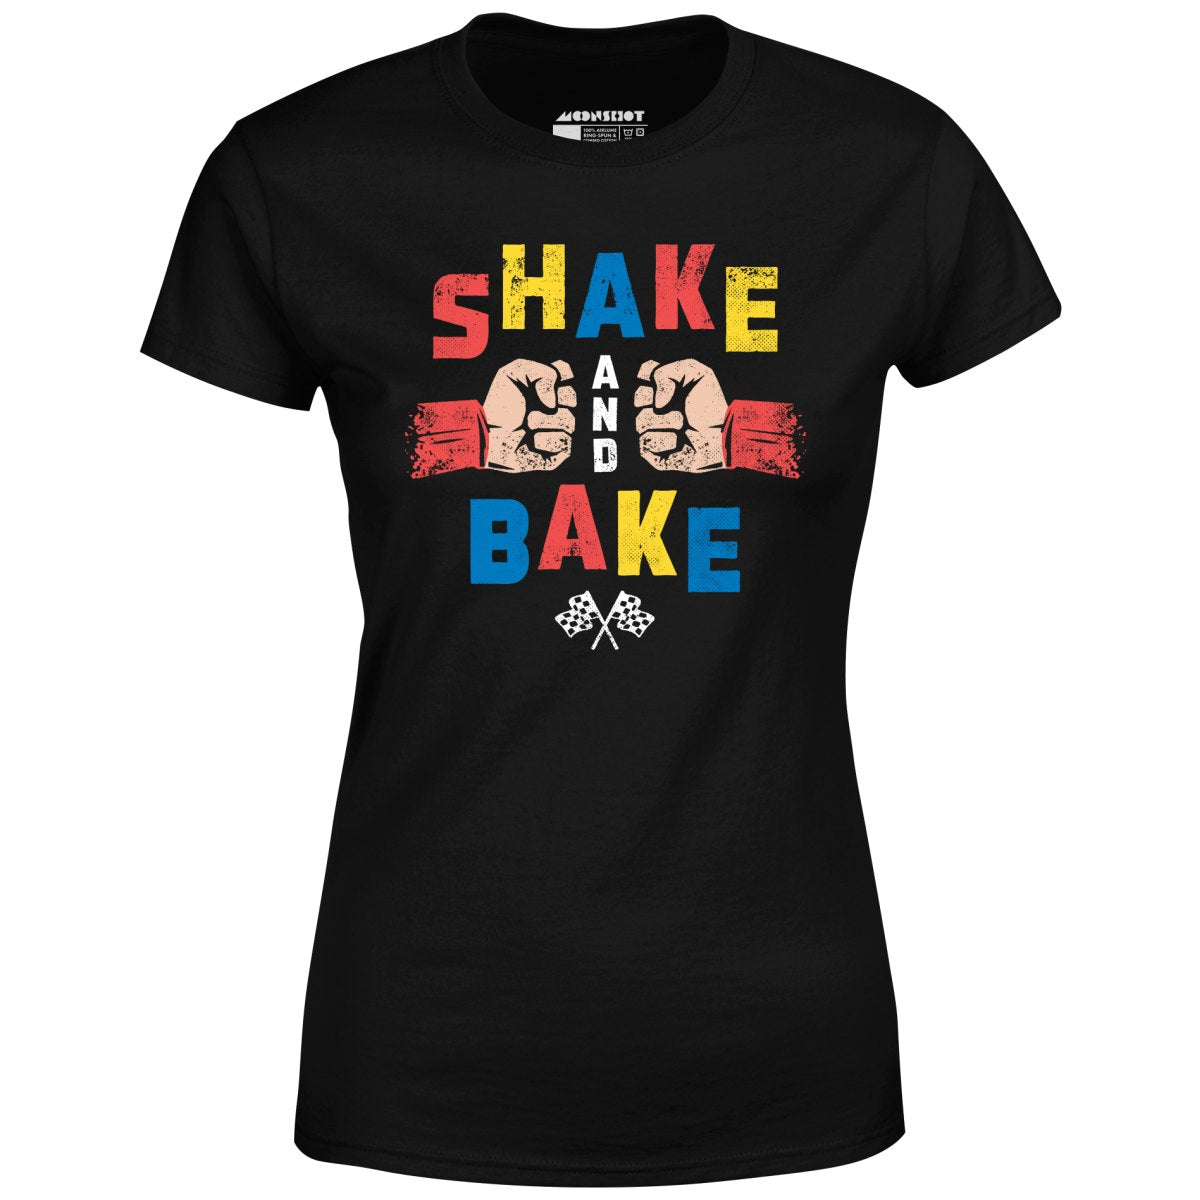 Shake and Bake - Women's T-Shirt